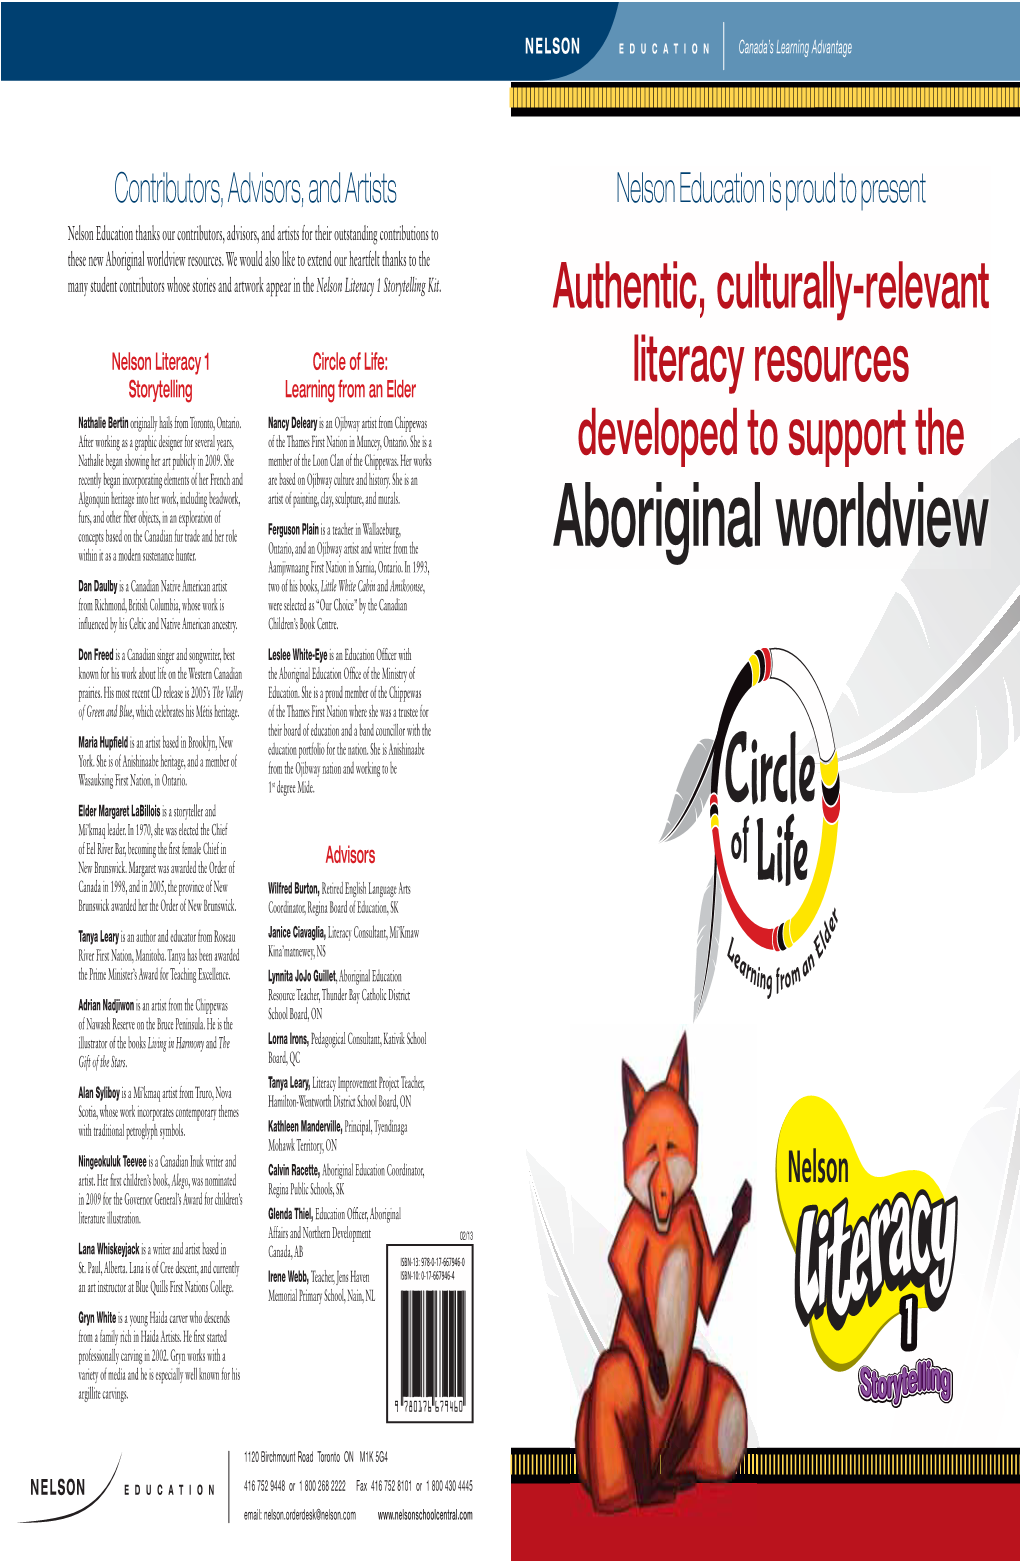 Aboriginal Worldview Resources